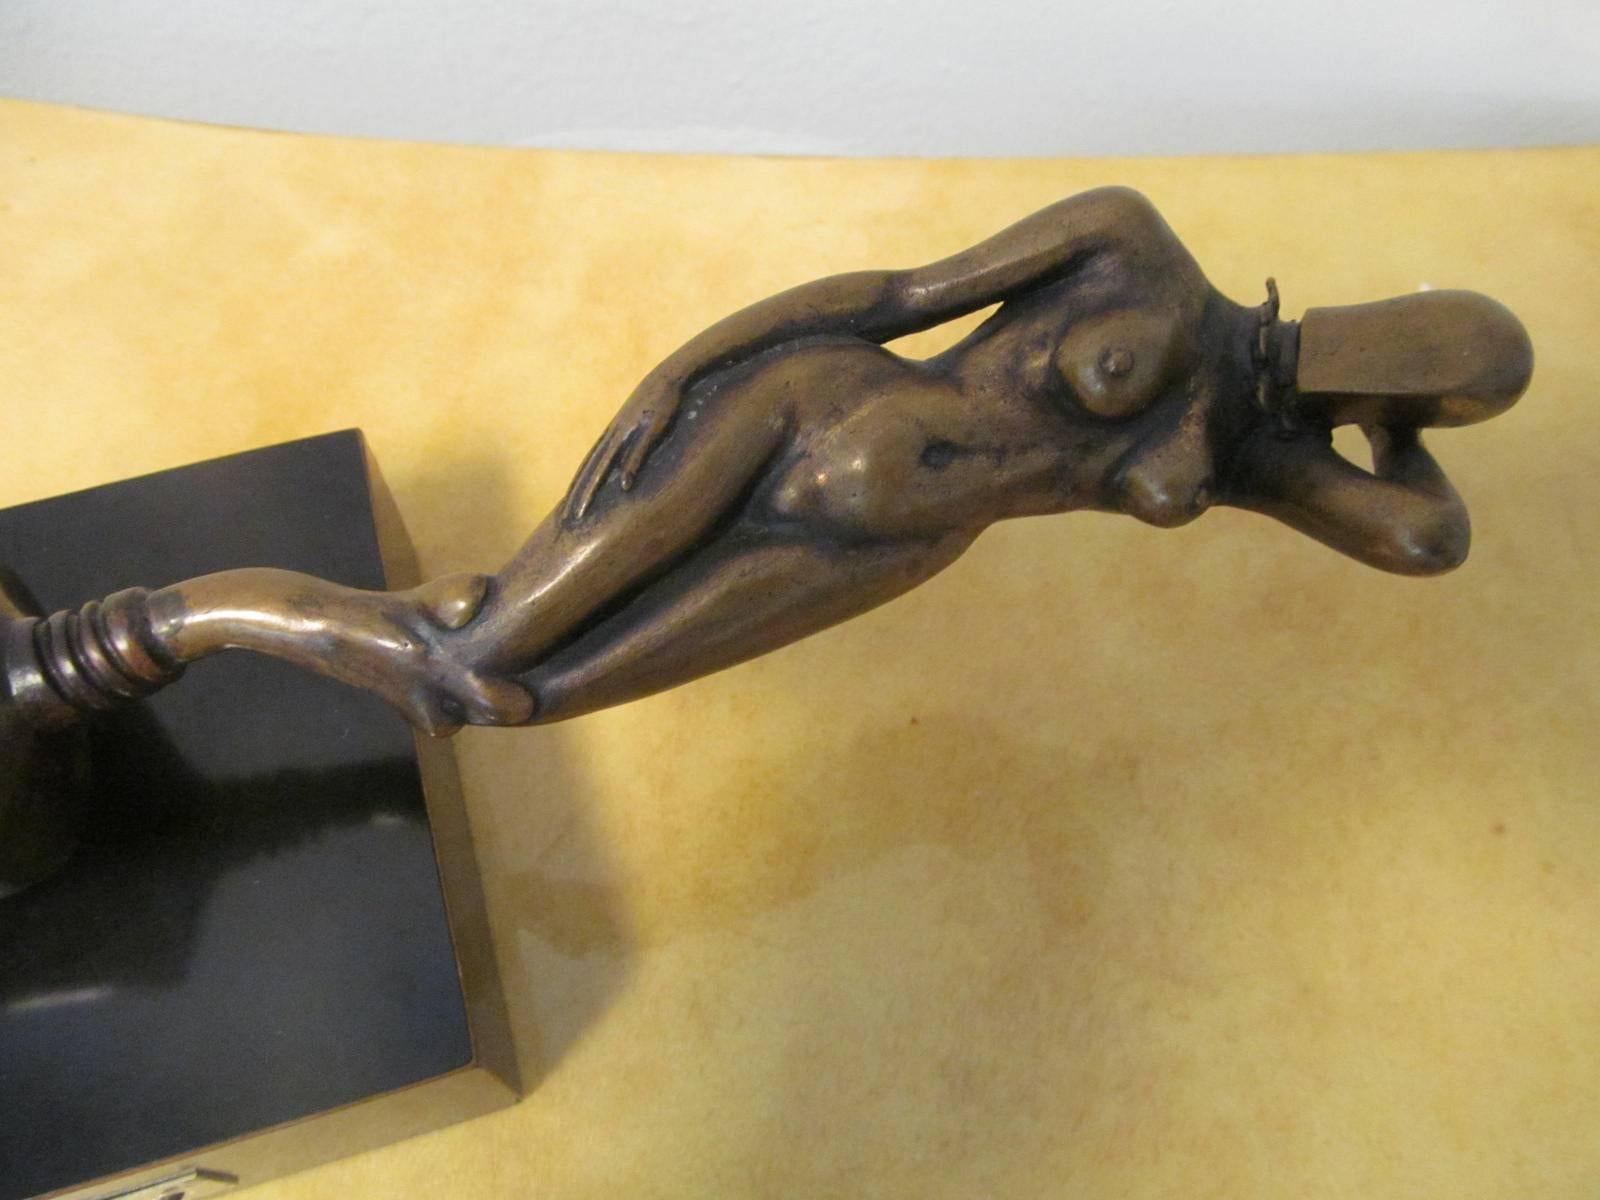 Rare signed bronze sculpture by Italian artist Tito Salomoni (1928-1986). Signed "Tito Salomoni" and "2/5".